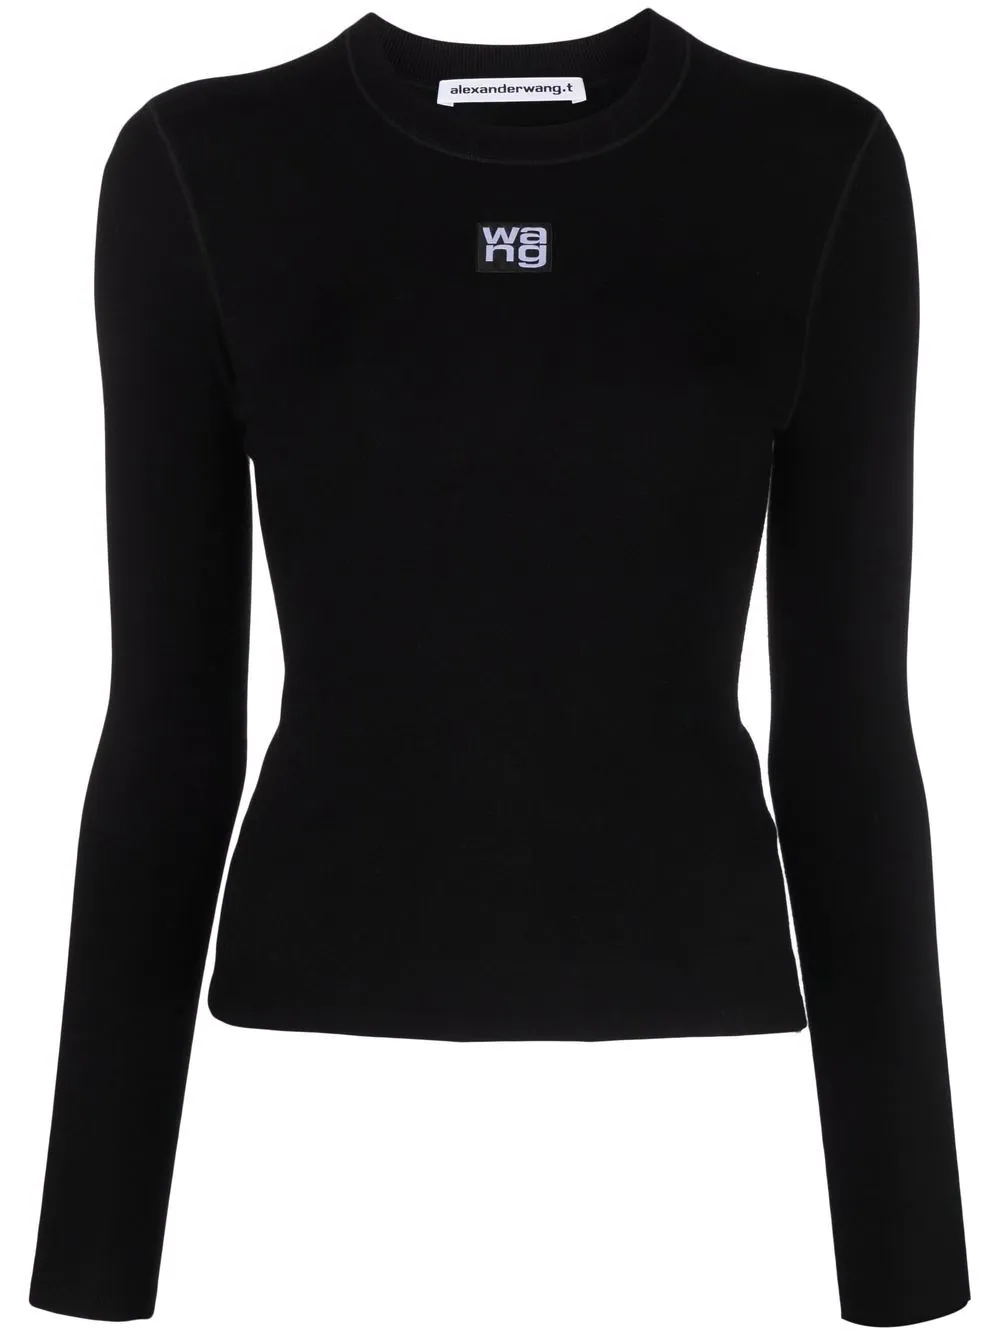 推荐ALEXANDER WANG 女士黑色logo贴花长袖T恤 4KC1221011-001商品